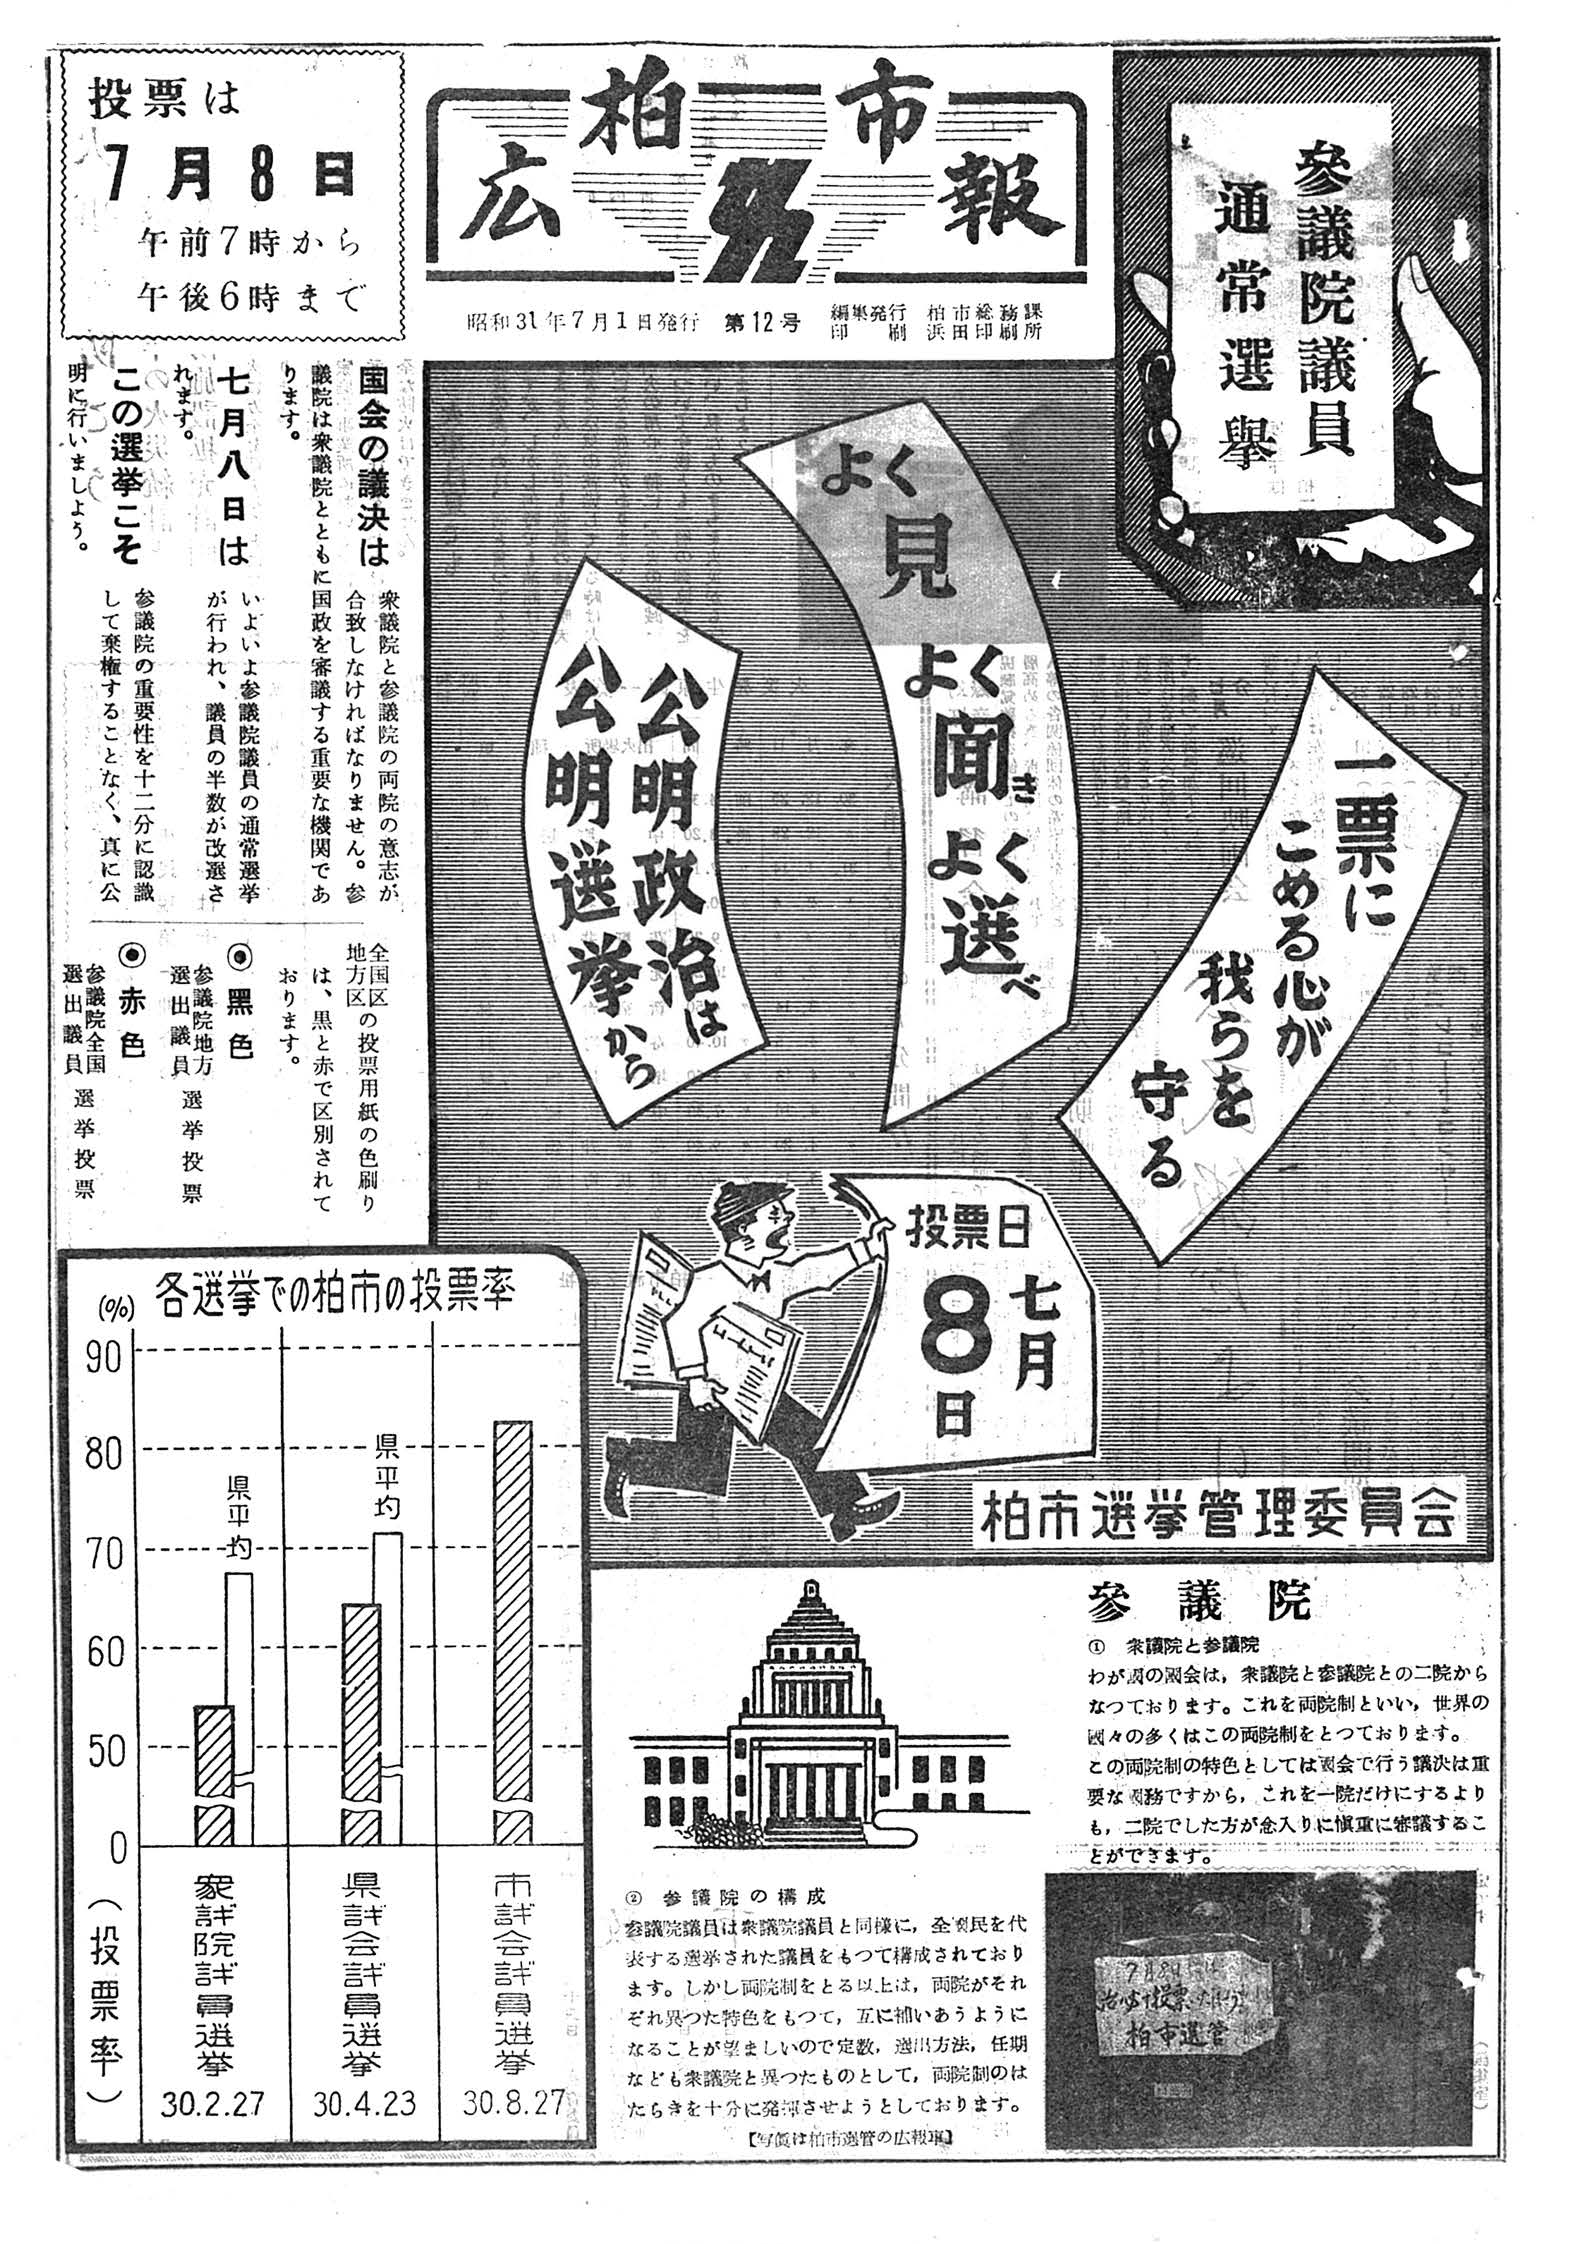 広報かしわ　昭和31年7月1日発行　12号